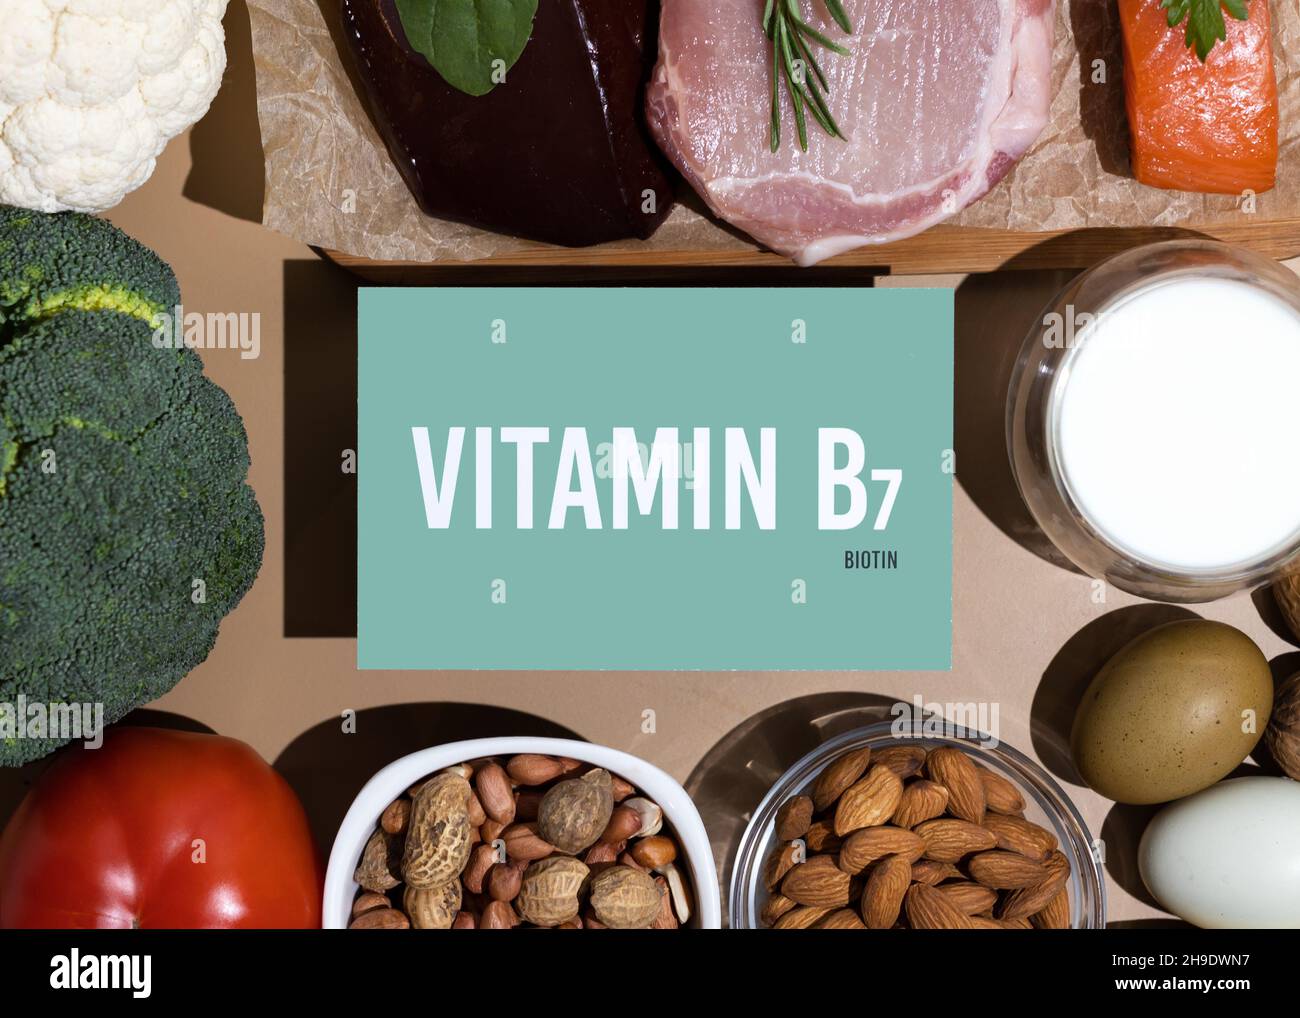 Un ensemble de produits naturels riches en vitamine B7 biotine.Concept d'alimentation saine.Panneau en carton avec inscription. Banque D'Images